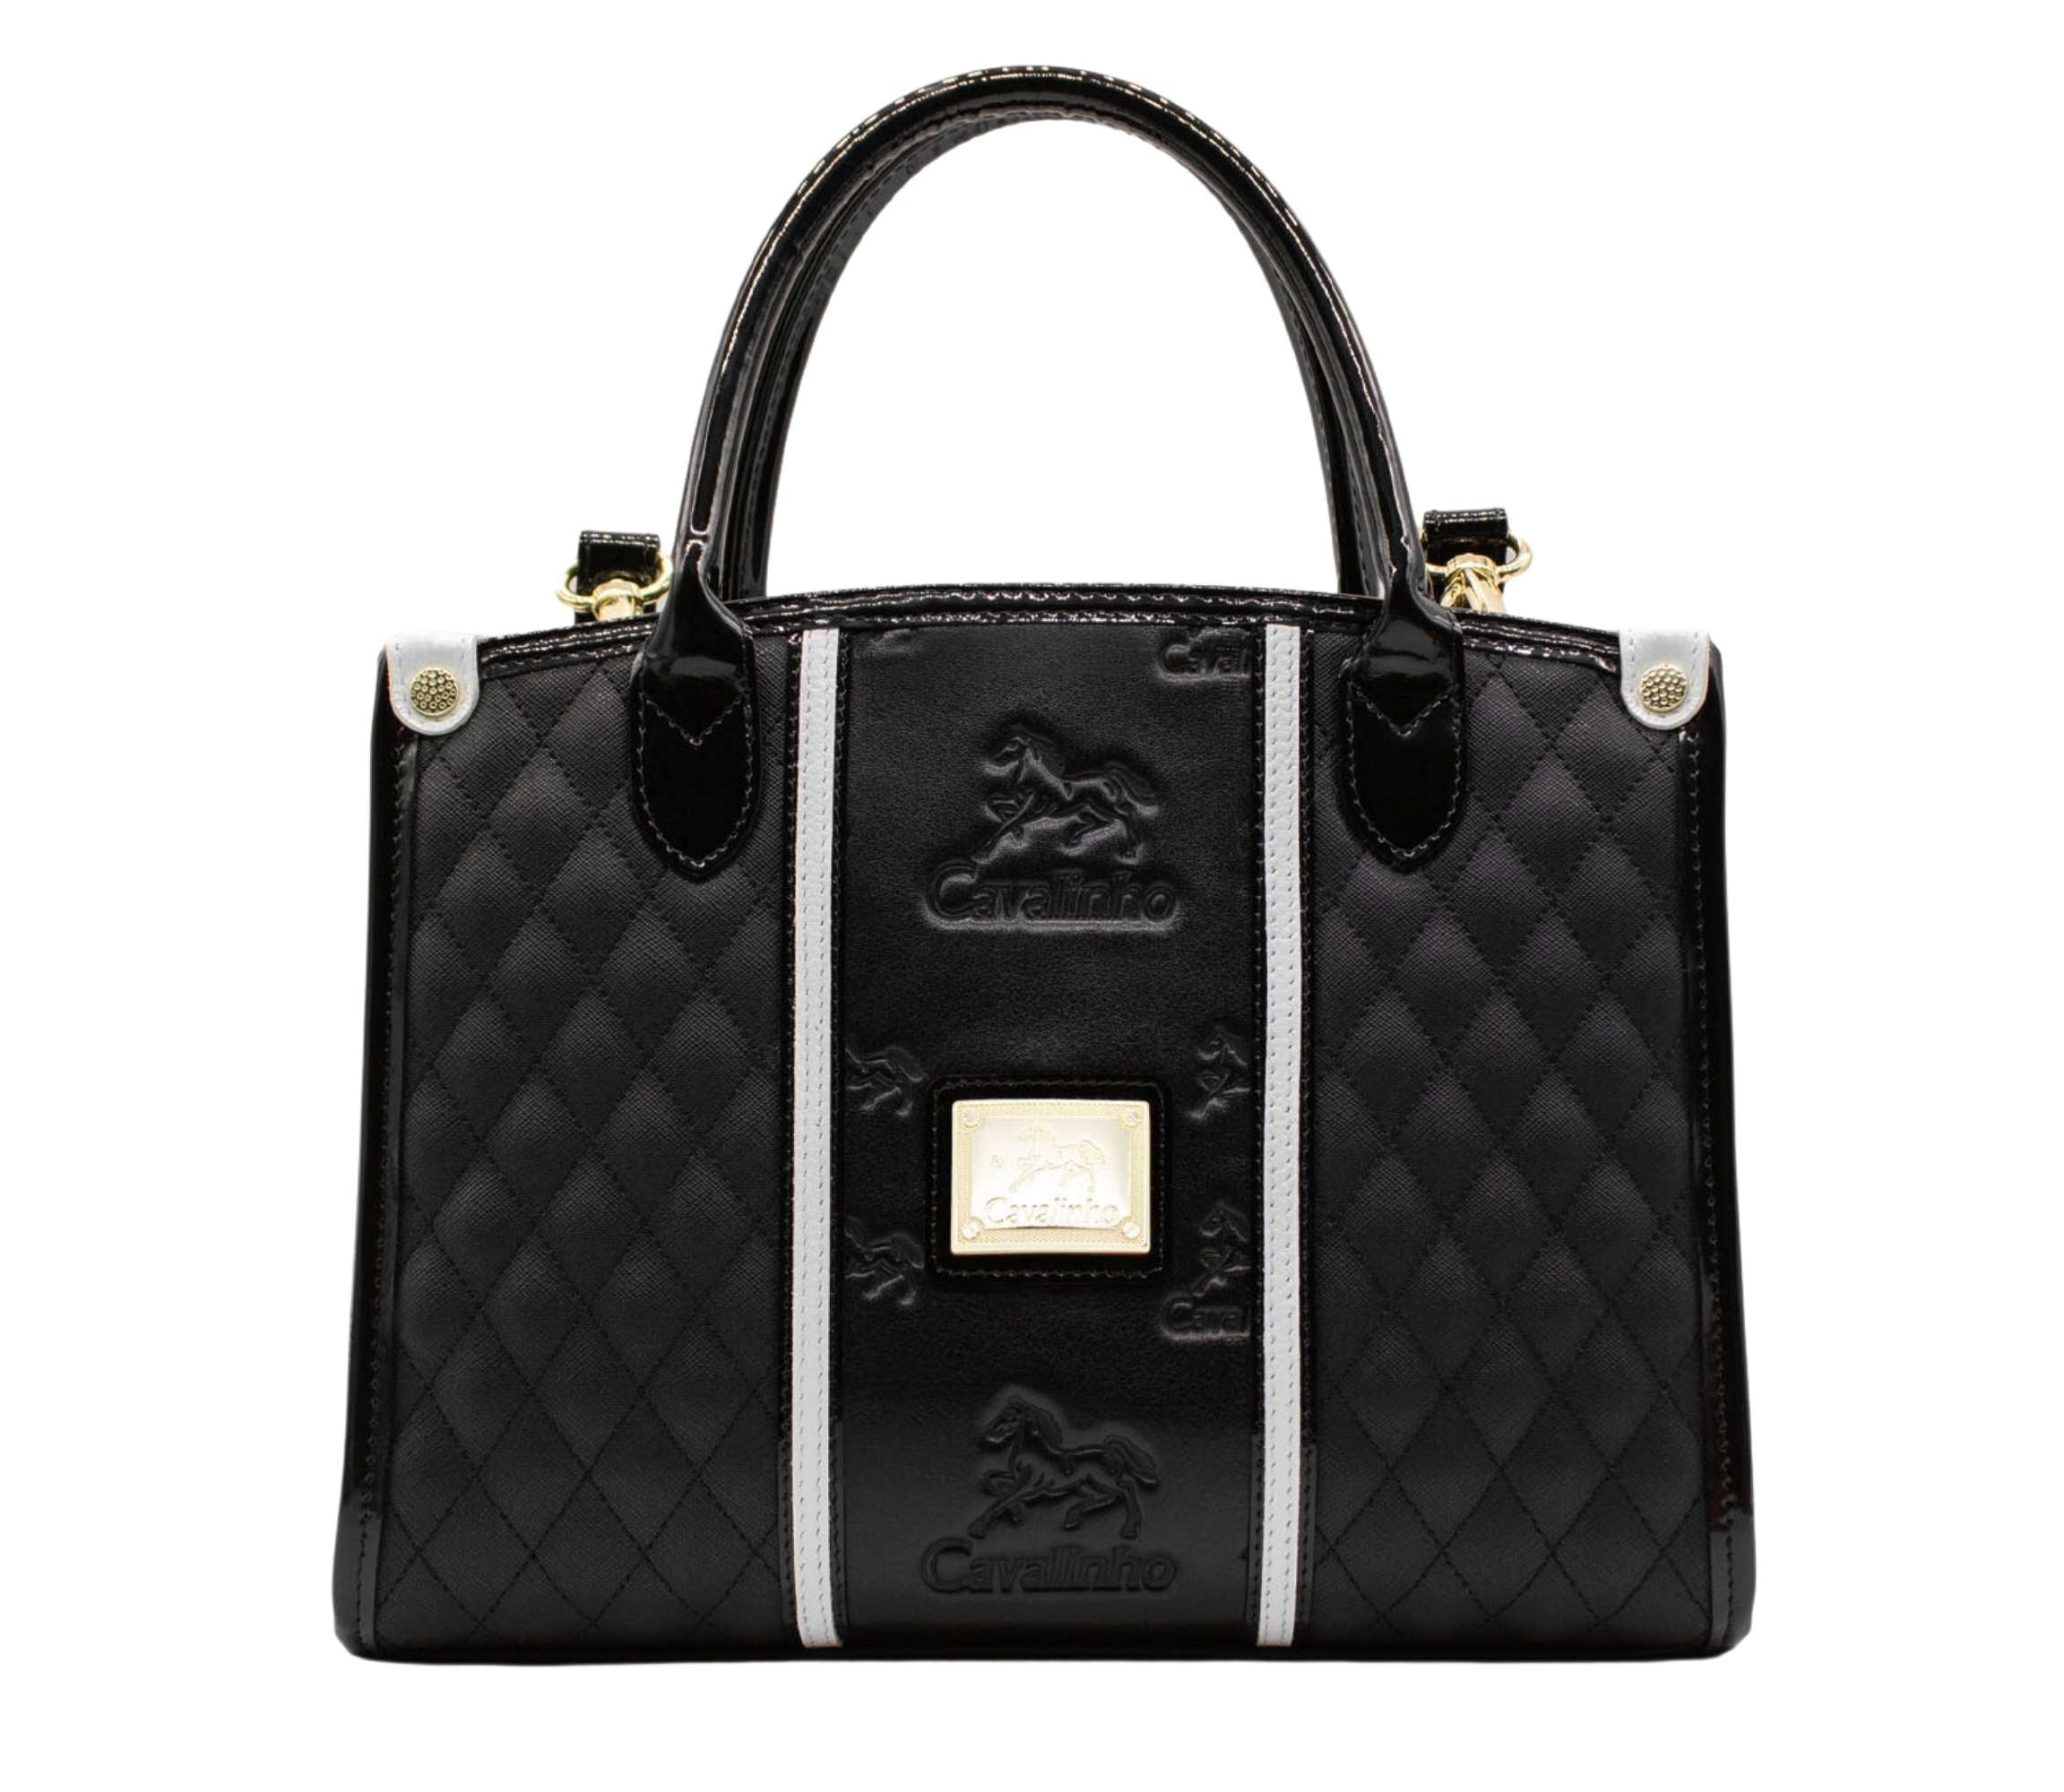 Royal Luxury Handbag for Women Black and White